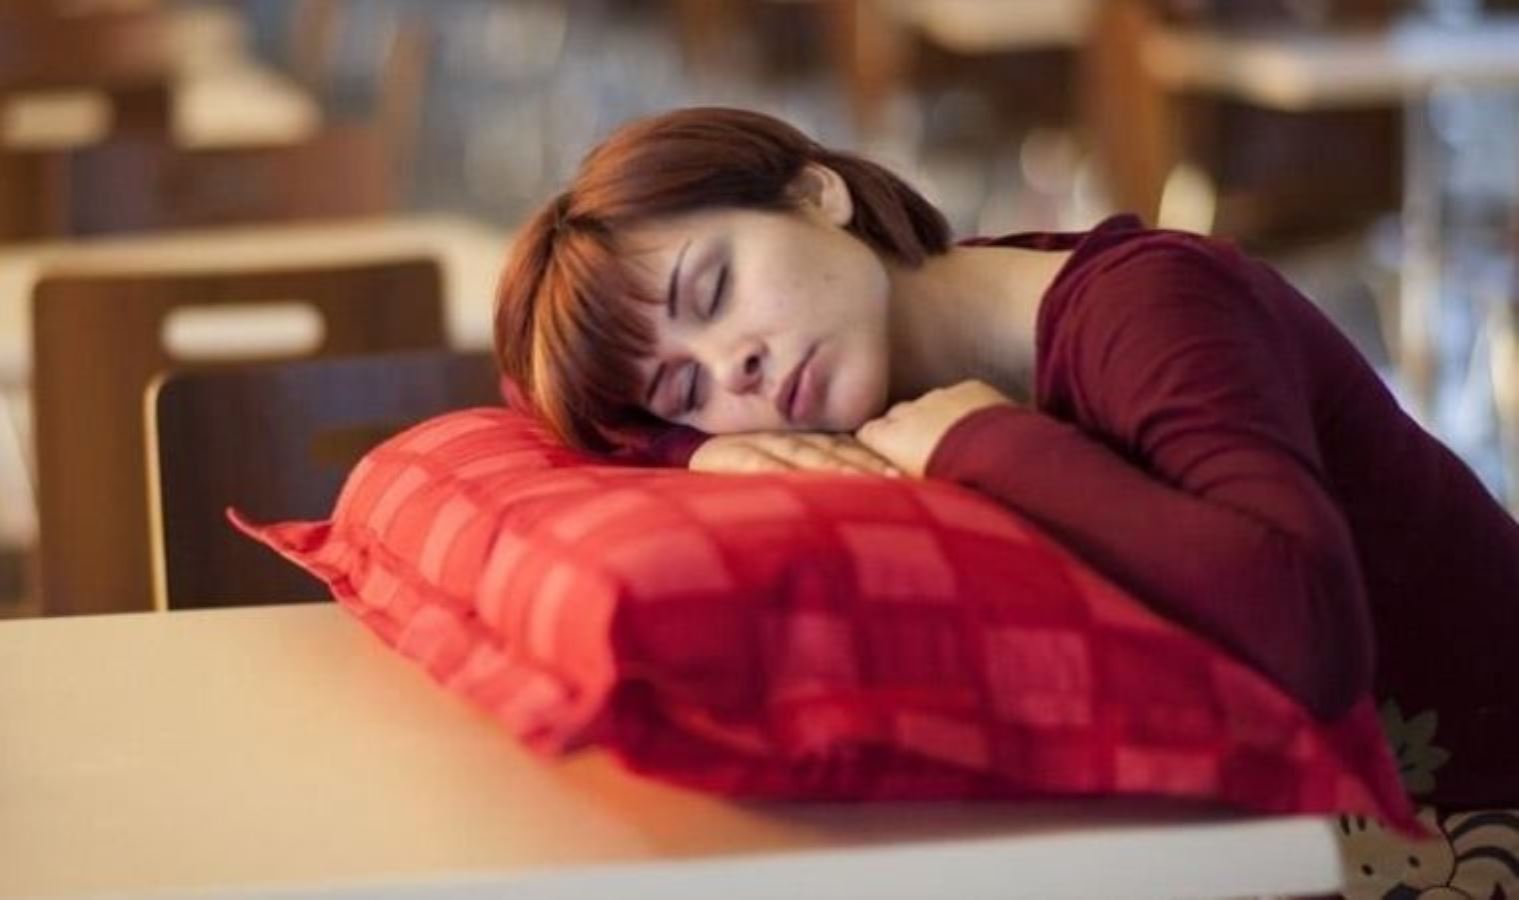 Yanlış bilinen 'efsane' tarih oldu: Uykusuzluk bir hastalık değildir!